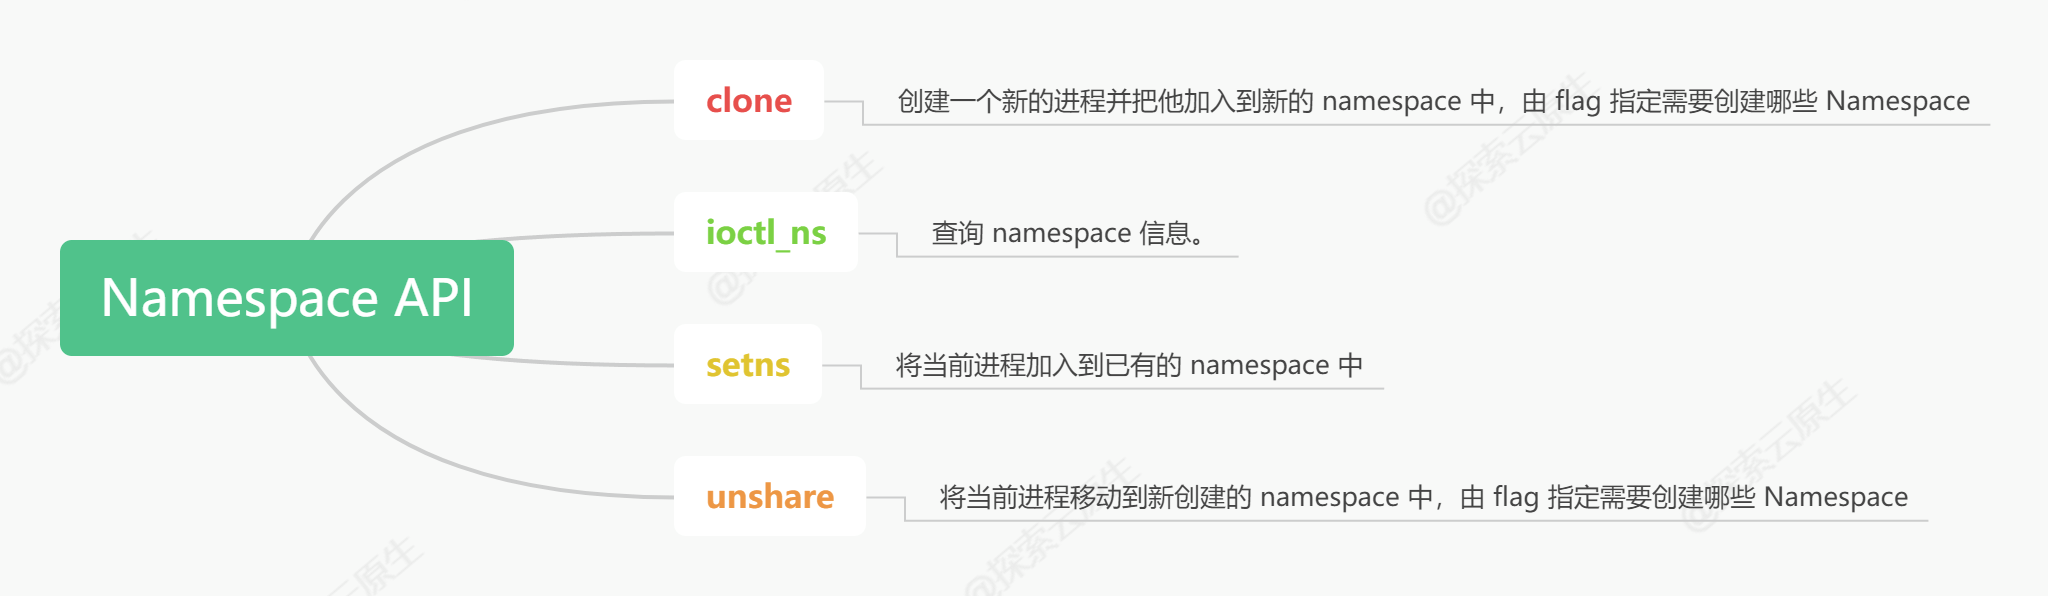 namespace-api